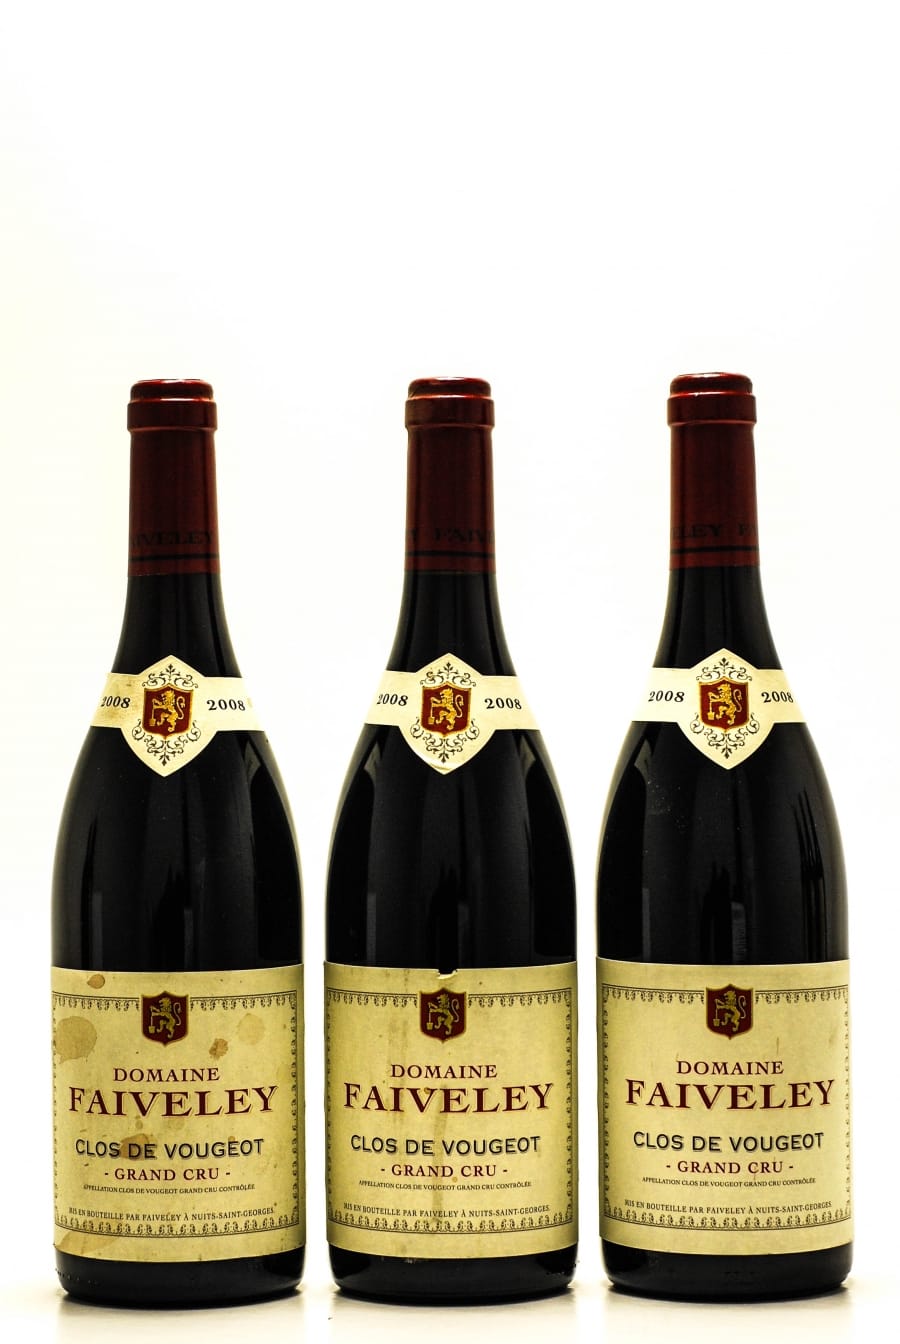 Faiveley - Clos de Vougeot 2008 From Original Wooden Case